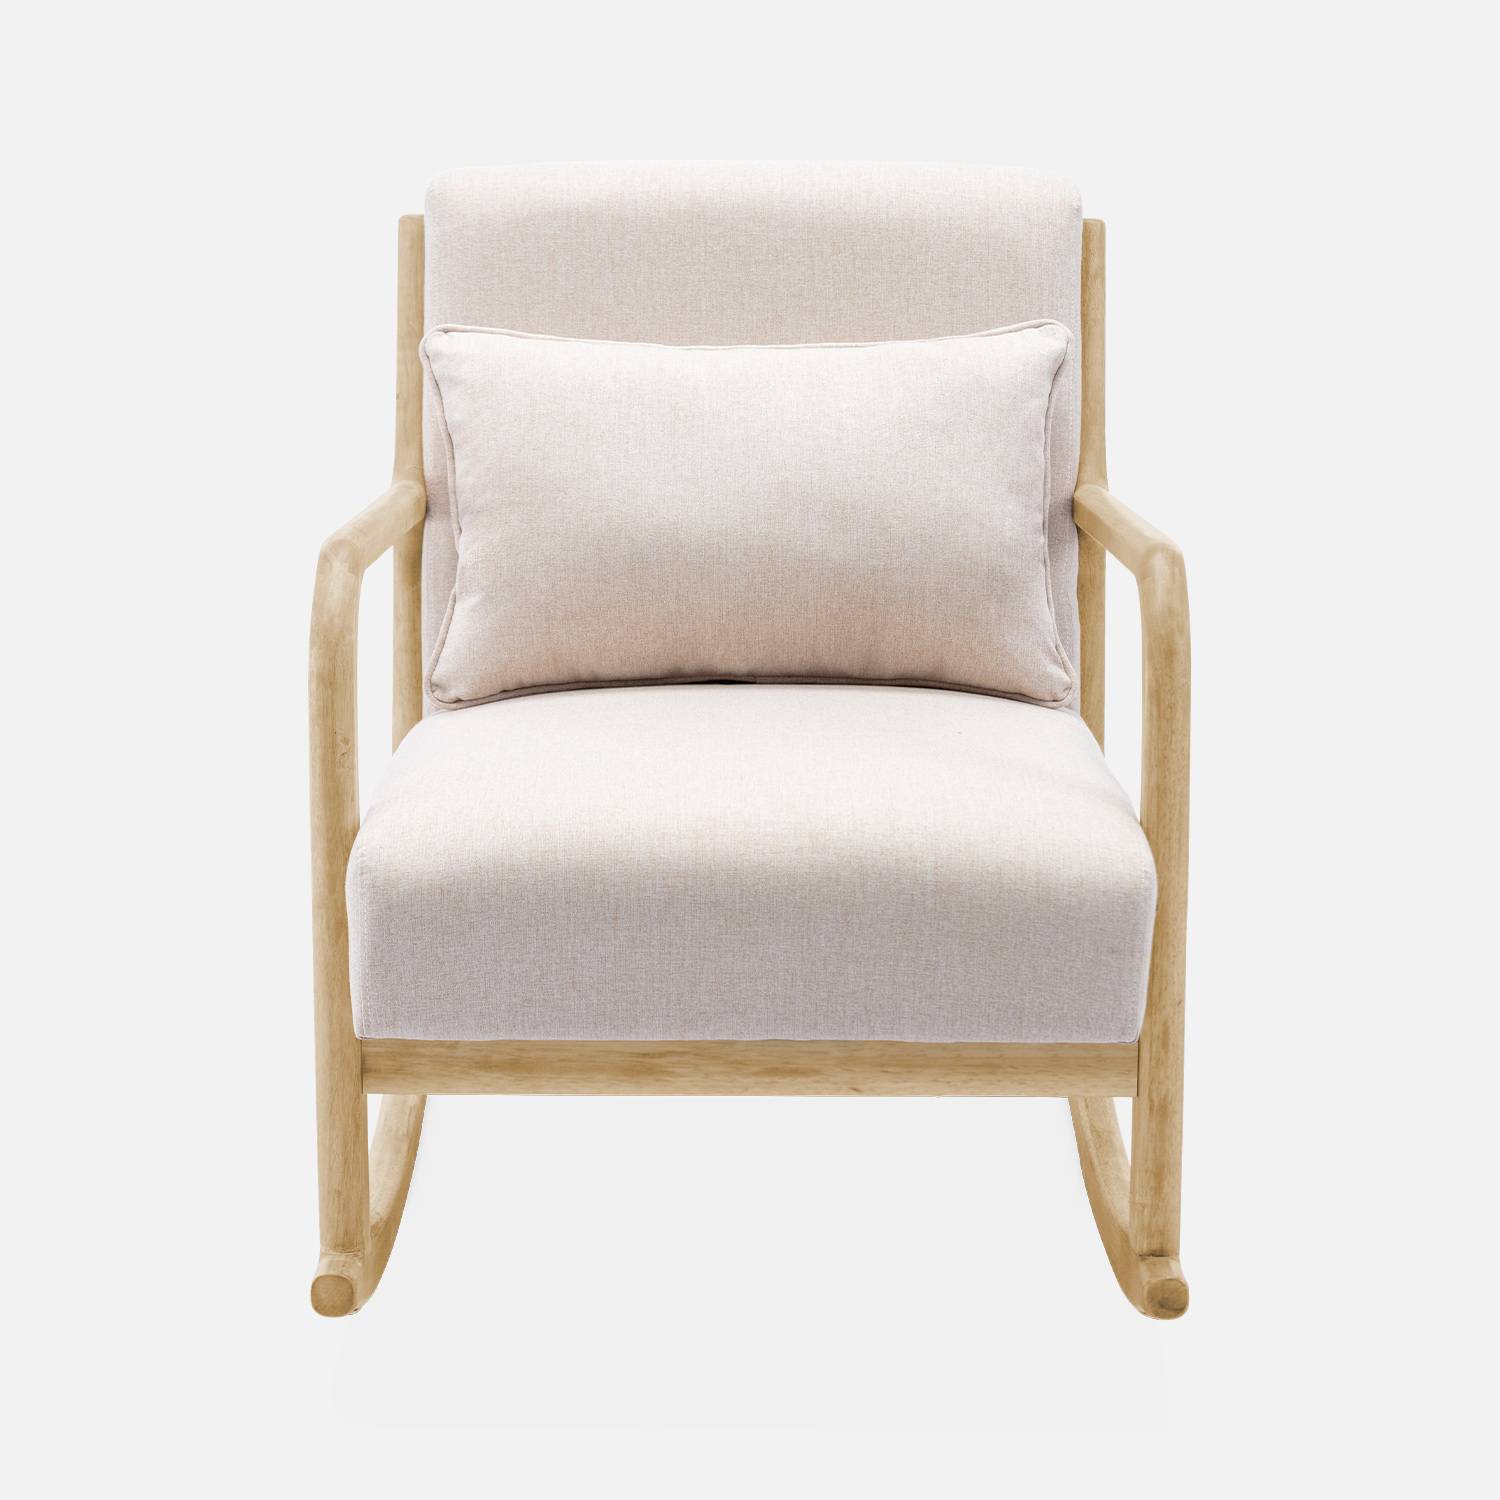 Fauteuil à bascule design en bois et tissu, 1 place, rocking chair scandinave, beige Photo4